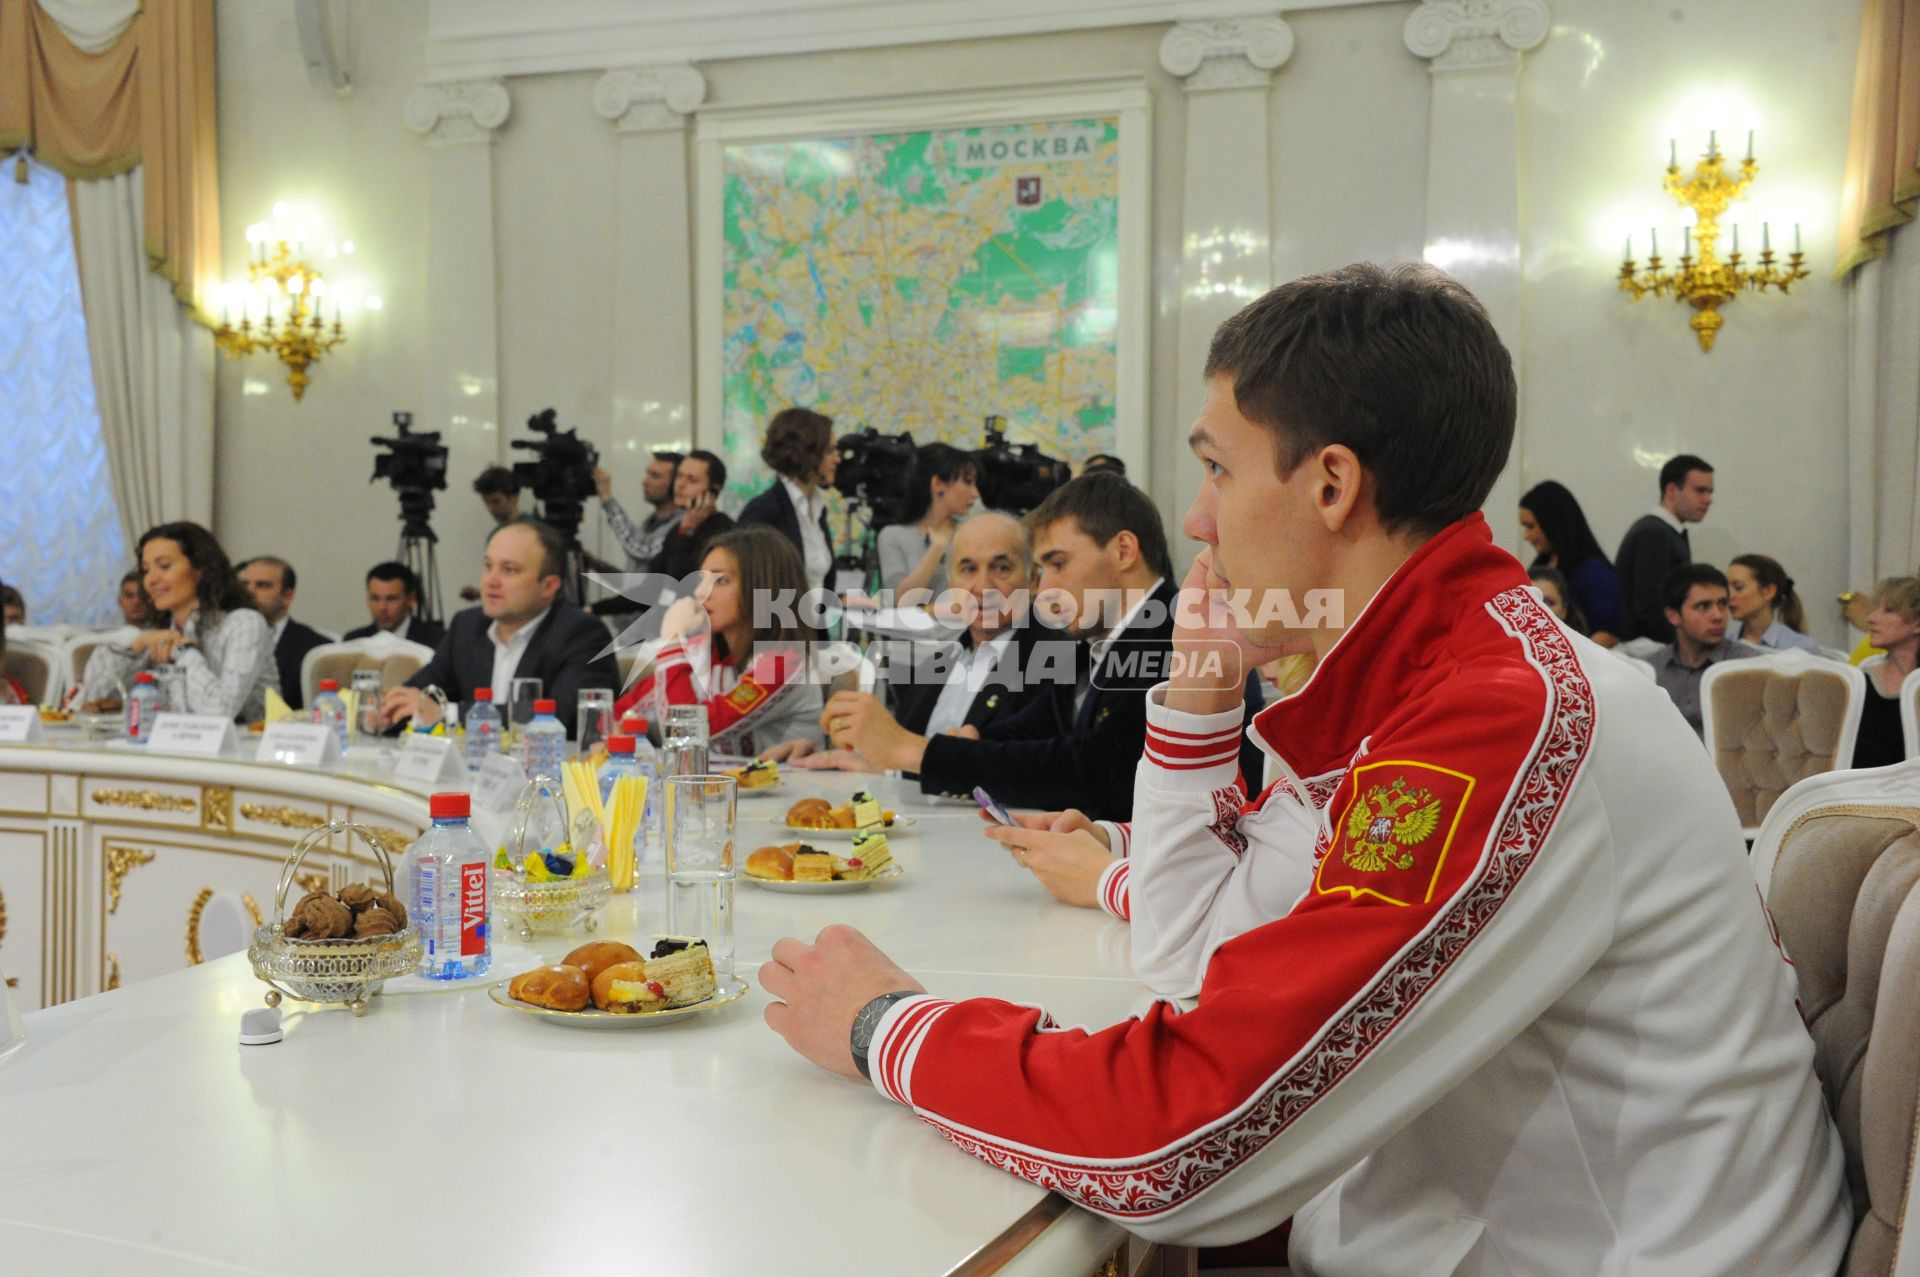 Мэр Москвы встретился с победителями и призерами Олимпийских игр в Сочи. На снимке: фигурист Дмитрий Соловьев.